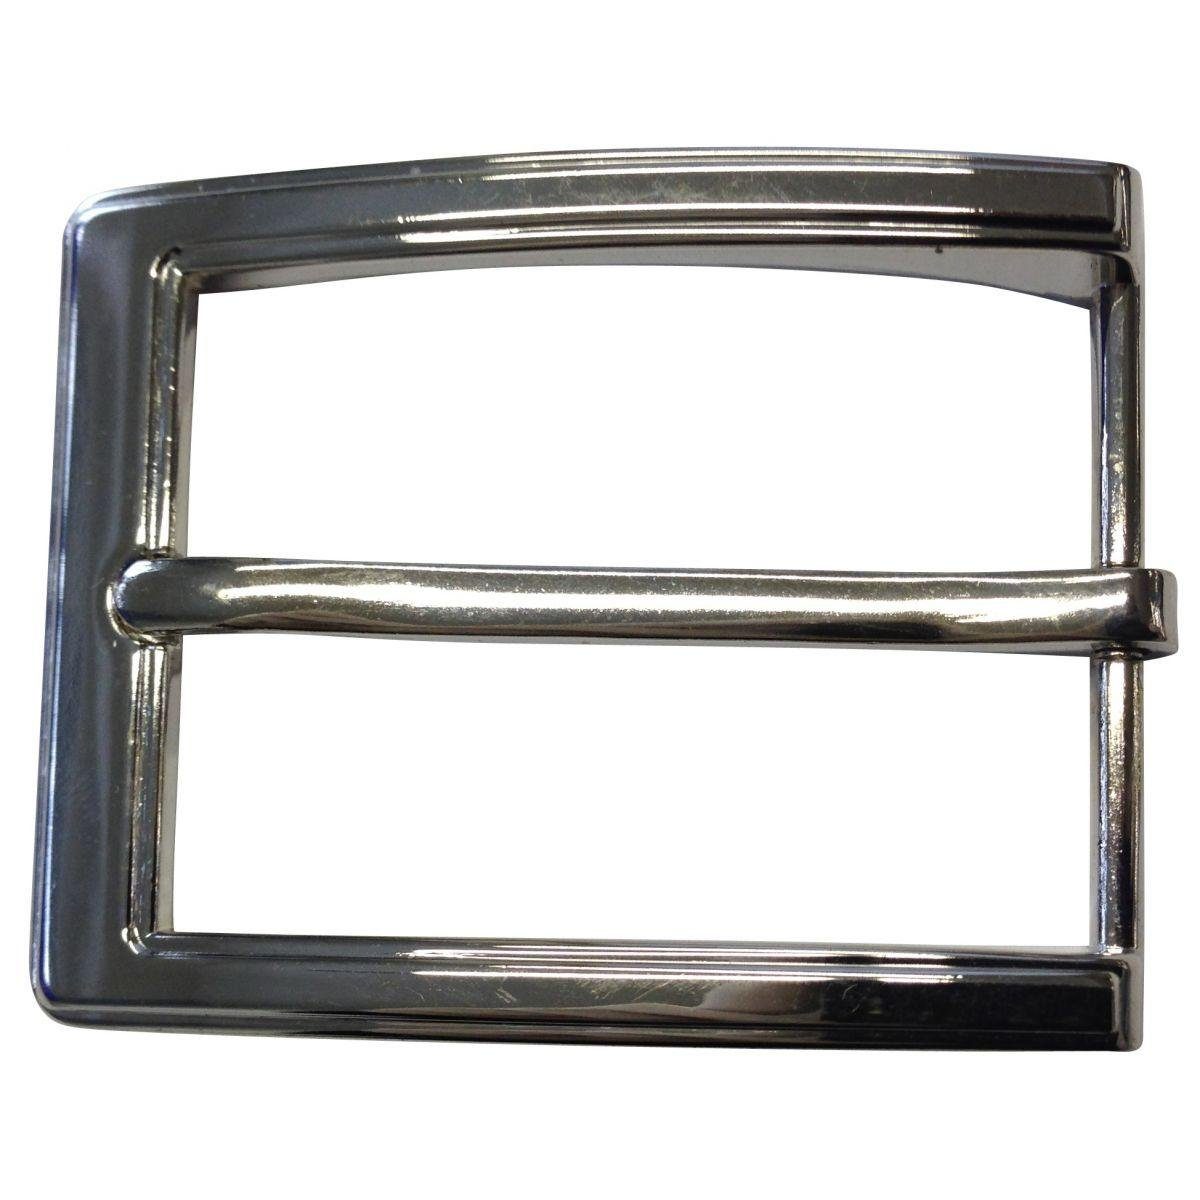 BELTINGER Gürtelschnalle 3,5 cm - Silber, Dorn-Schließe 3.5cm Gürtelschließe Für 35mm Glänzend Gürtel - 